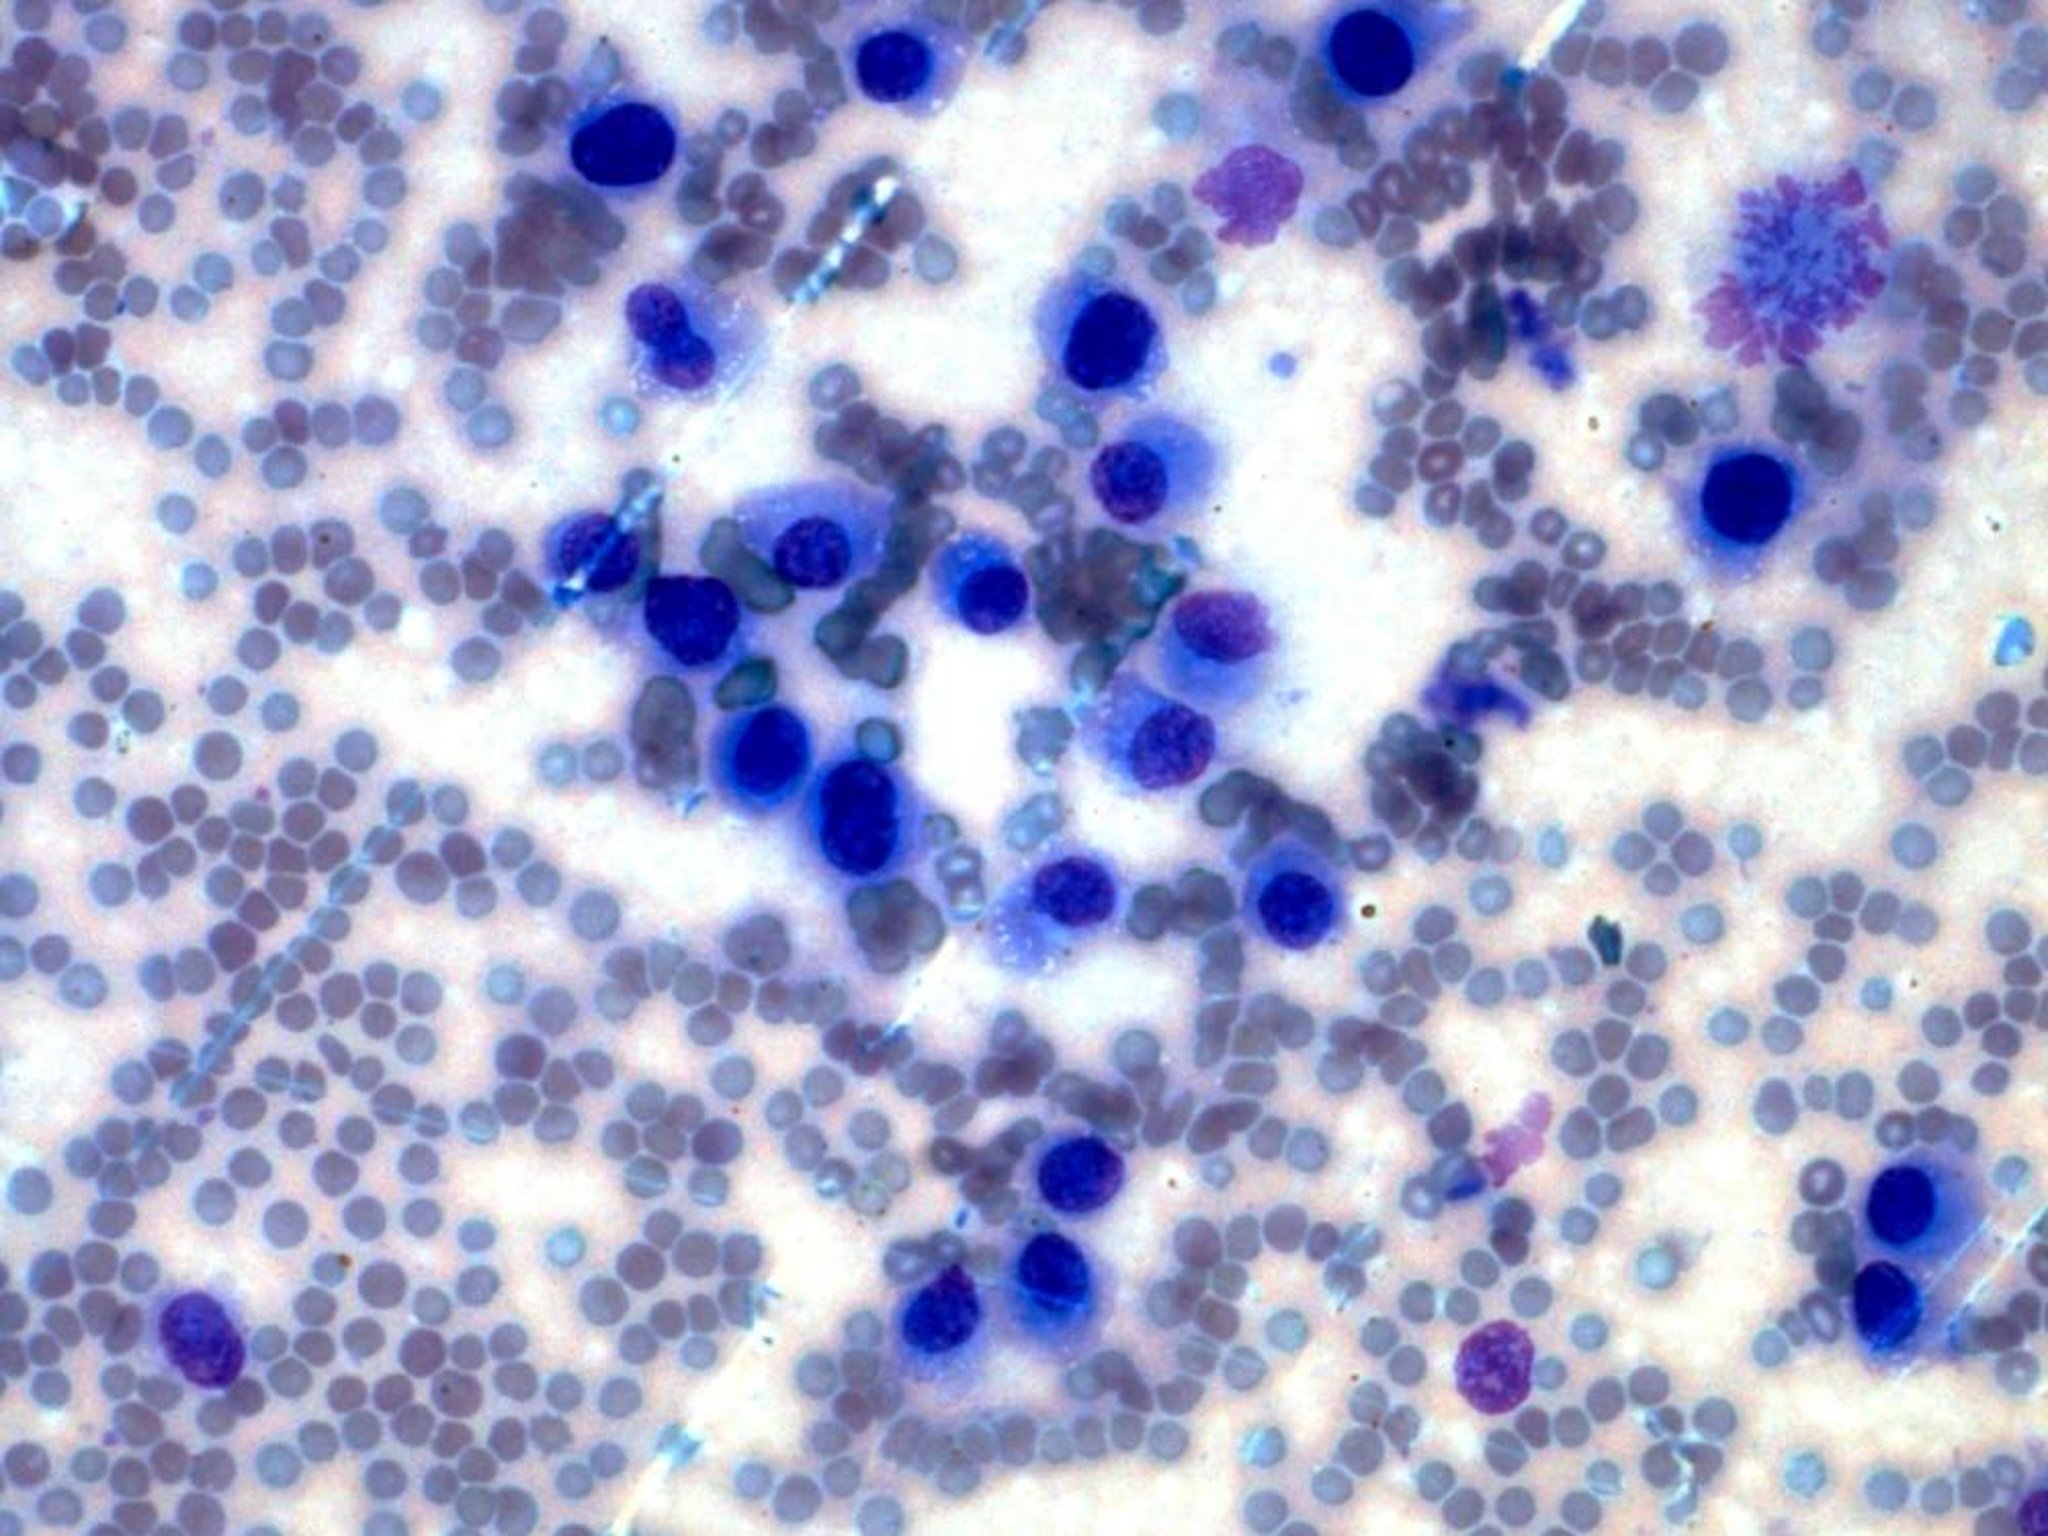 Round cells (plasmacytoma)